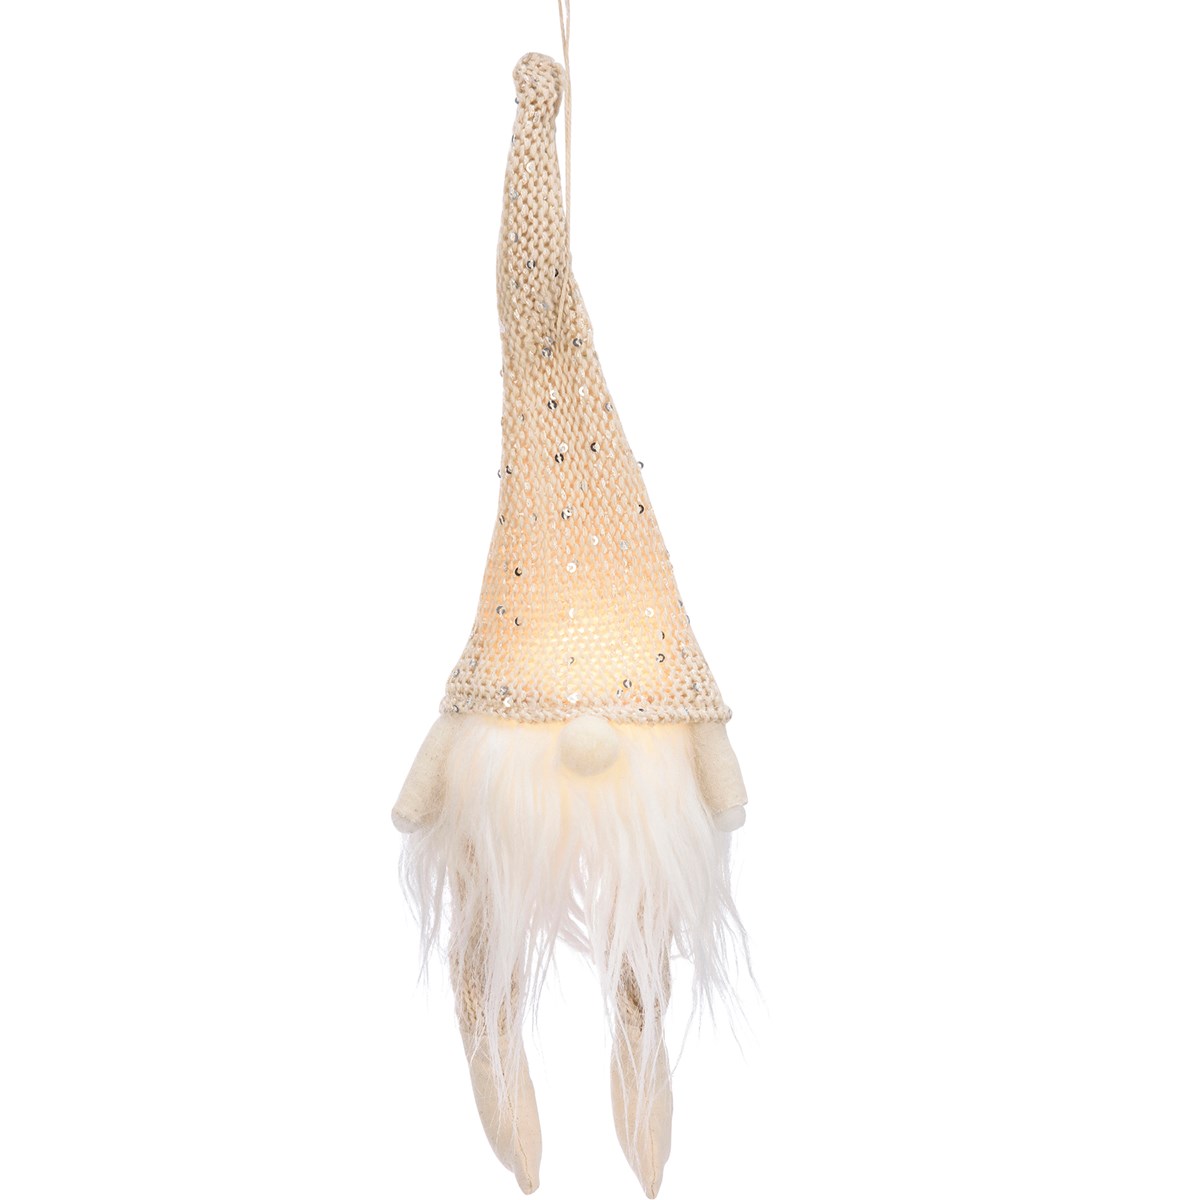 Ornament - Cream Gnome - 4" x 9" x 4" - Polyester, Plastic, LED